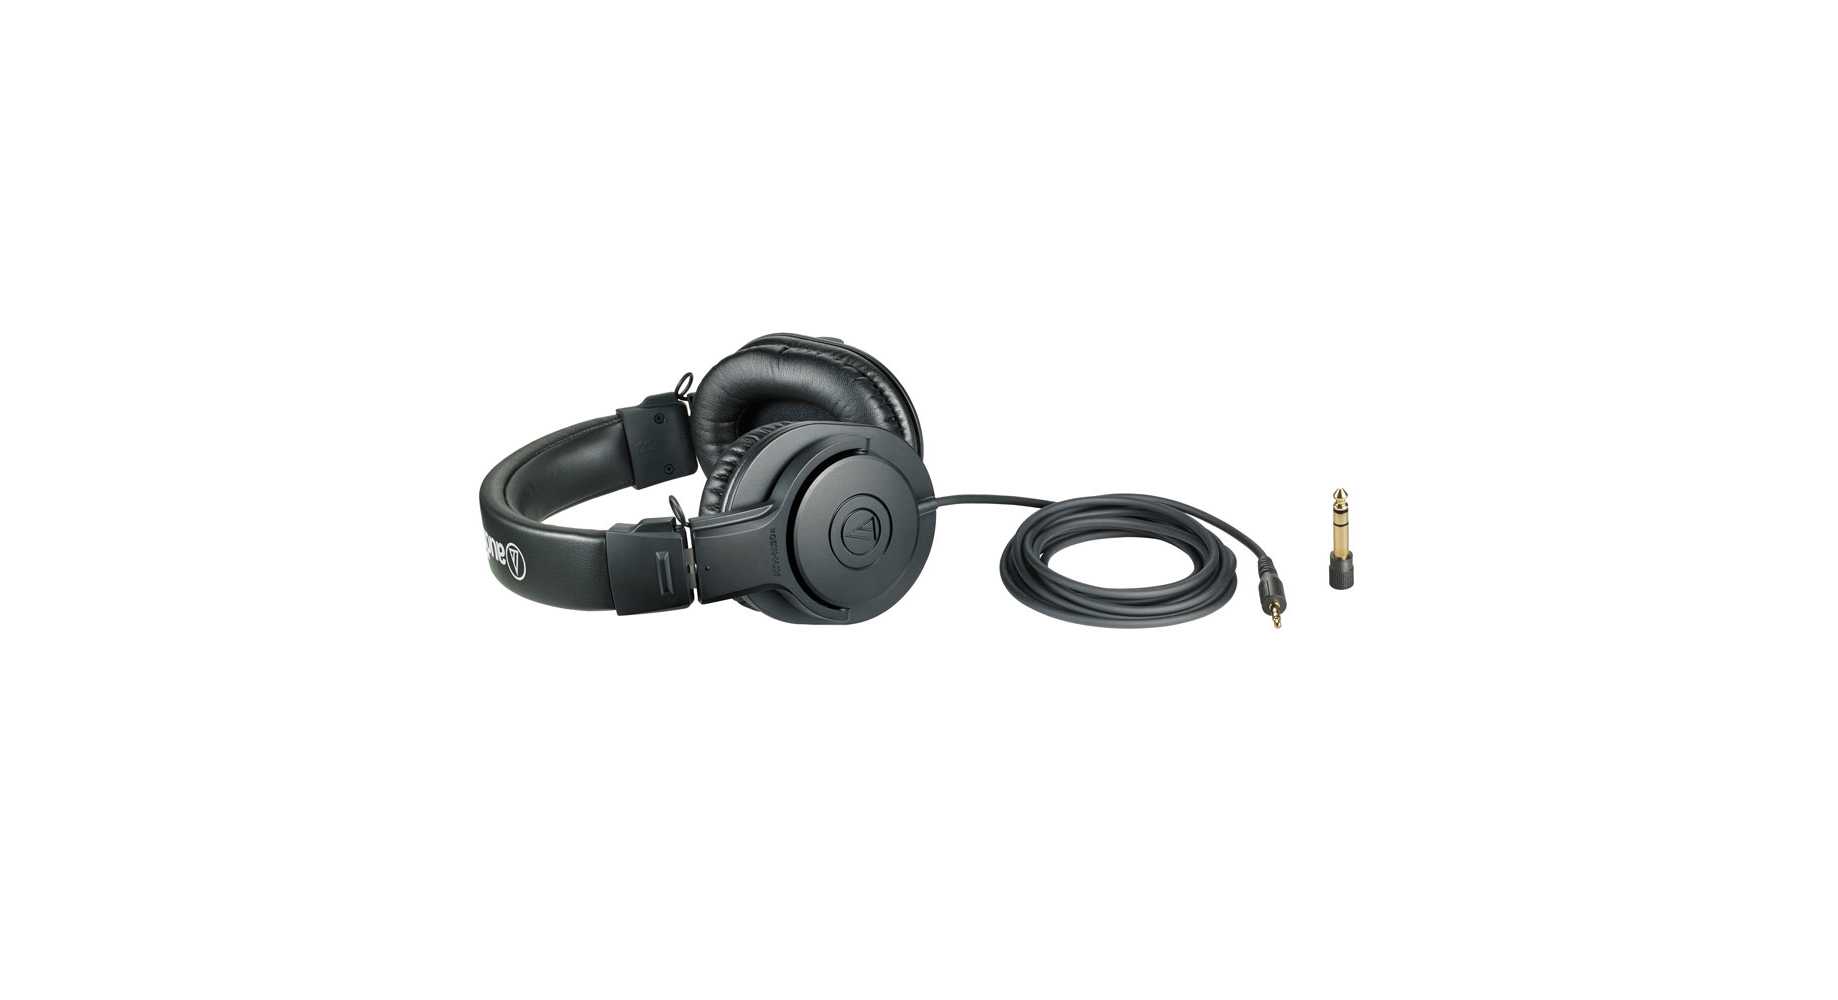 Audio-technica ath-sj3 купить по акционной цене , отзывы и обзоры.